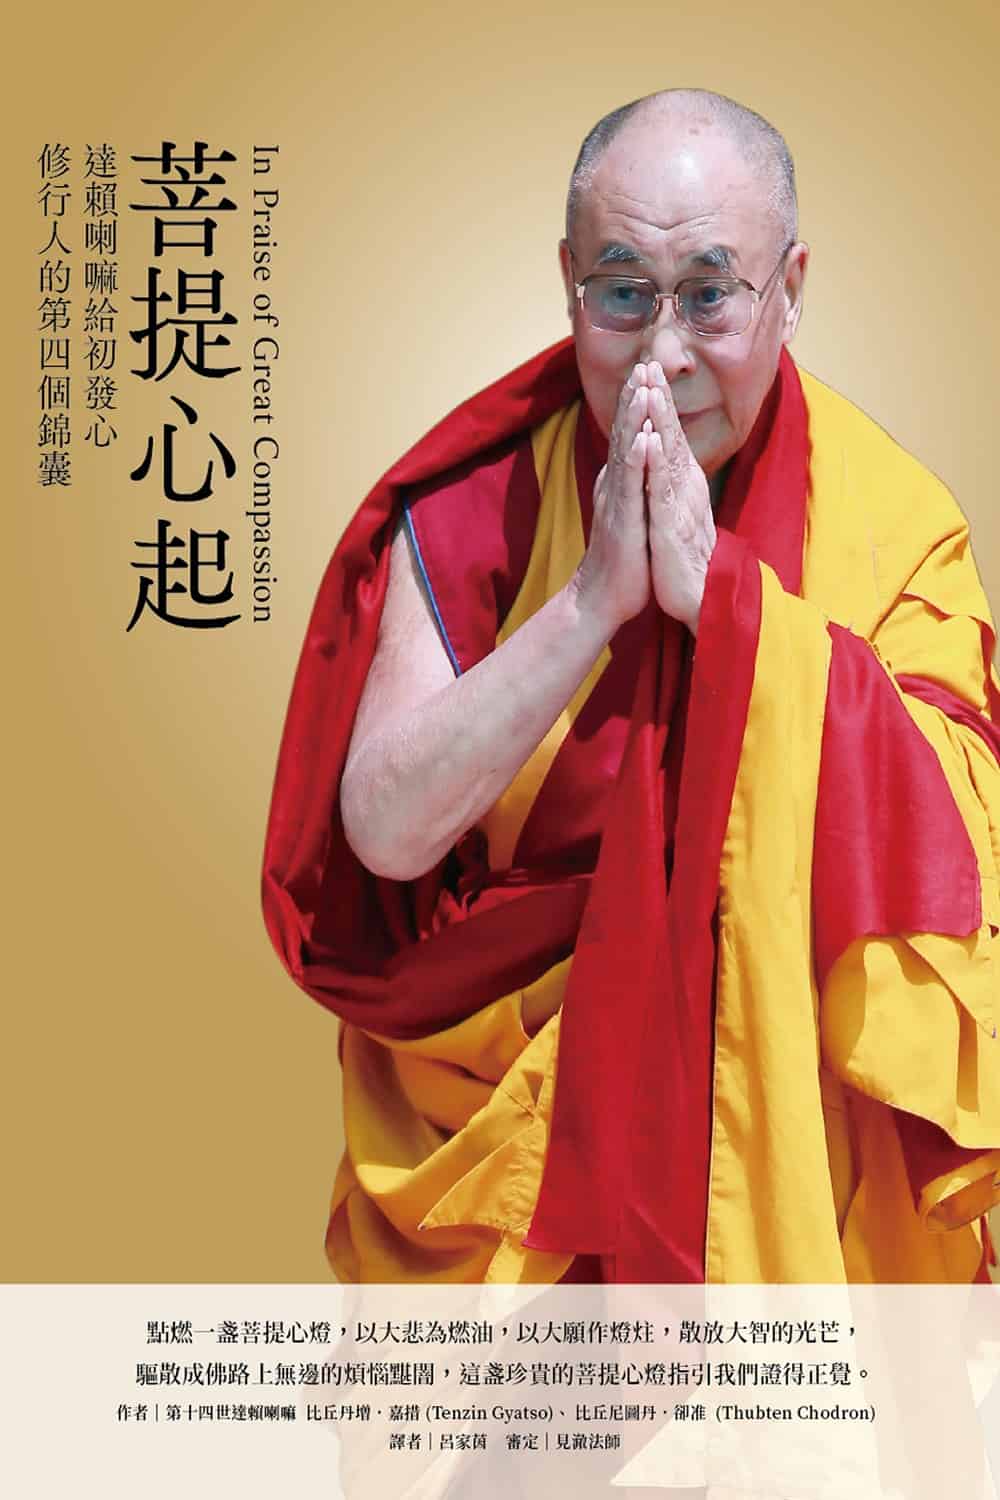 غلاف الترجمة الصينية لكتاب "In Prise of Great Compassion"